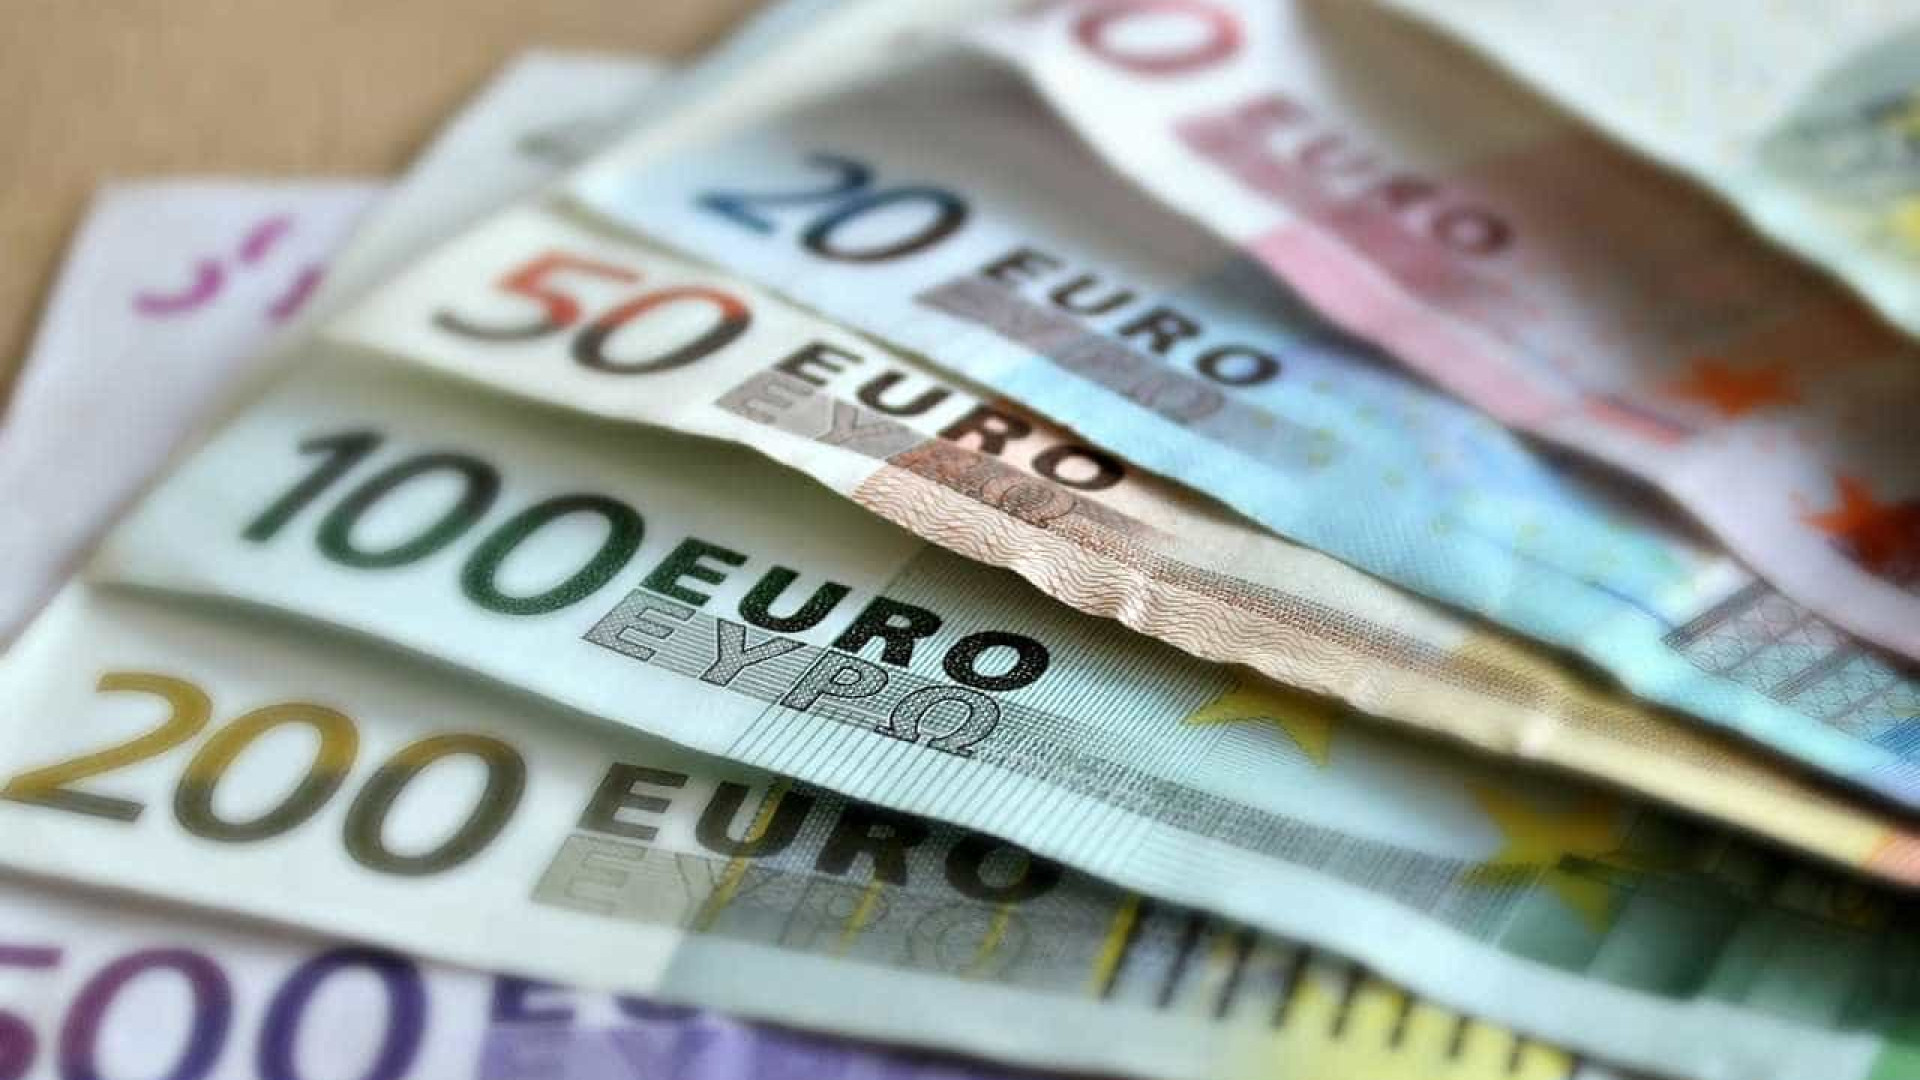 Holanda discute saída da zona euro, diz jornal
